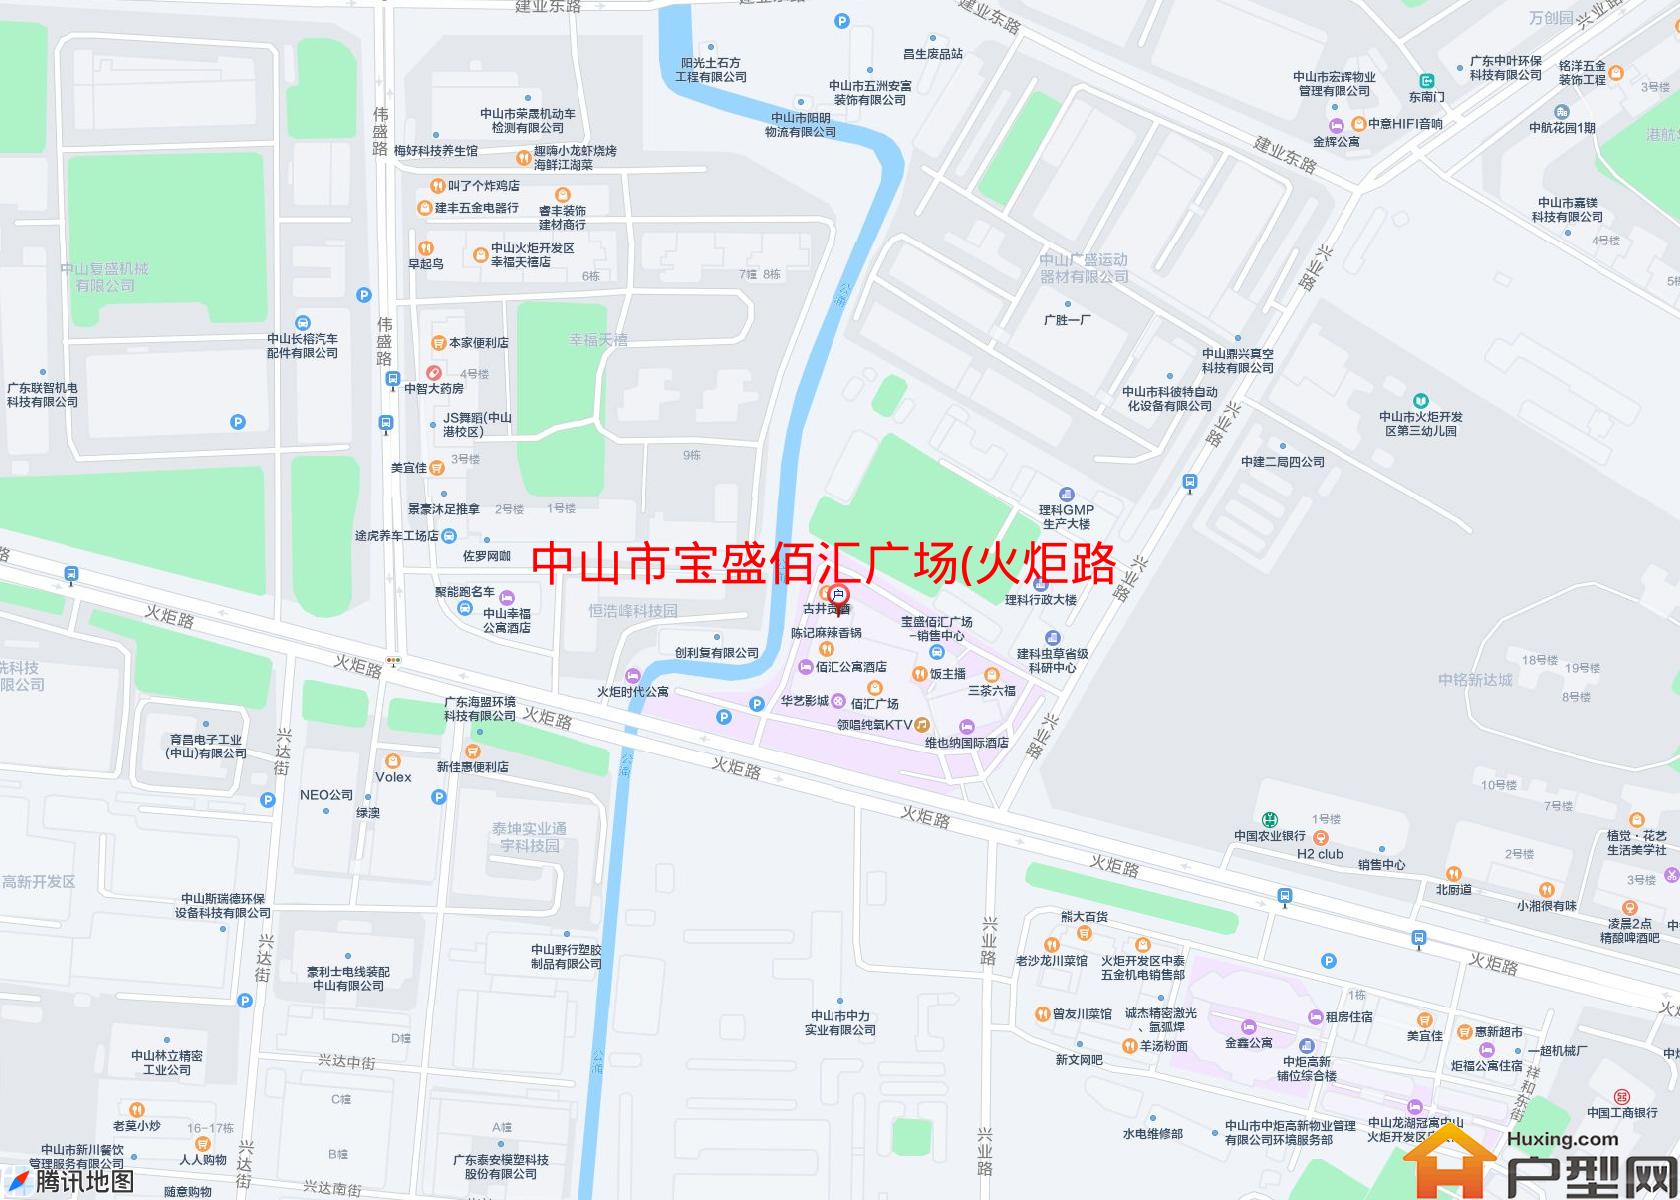 宝盛佰汇广场(火炬路8号)小区 - 户型网